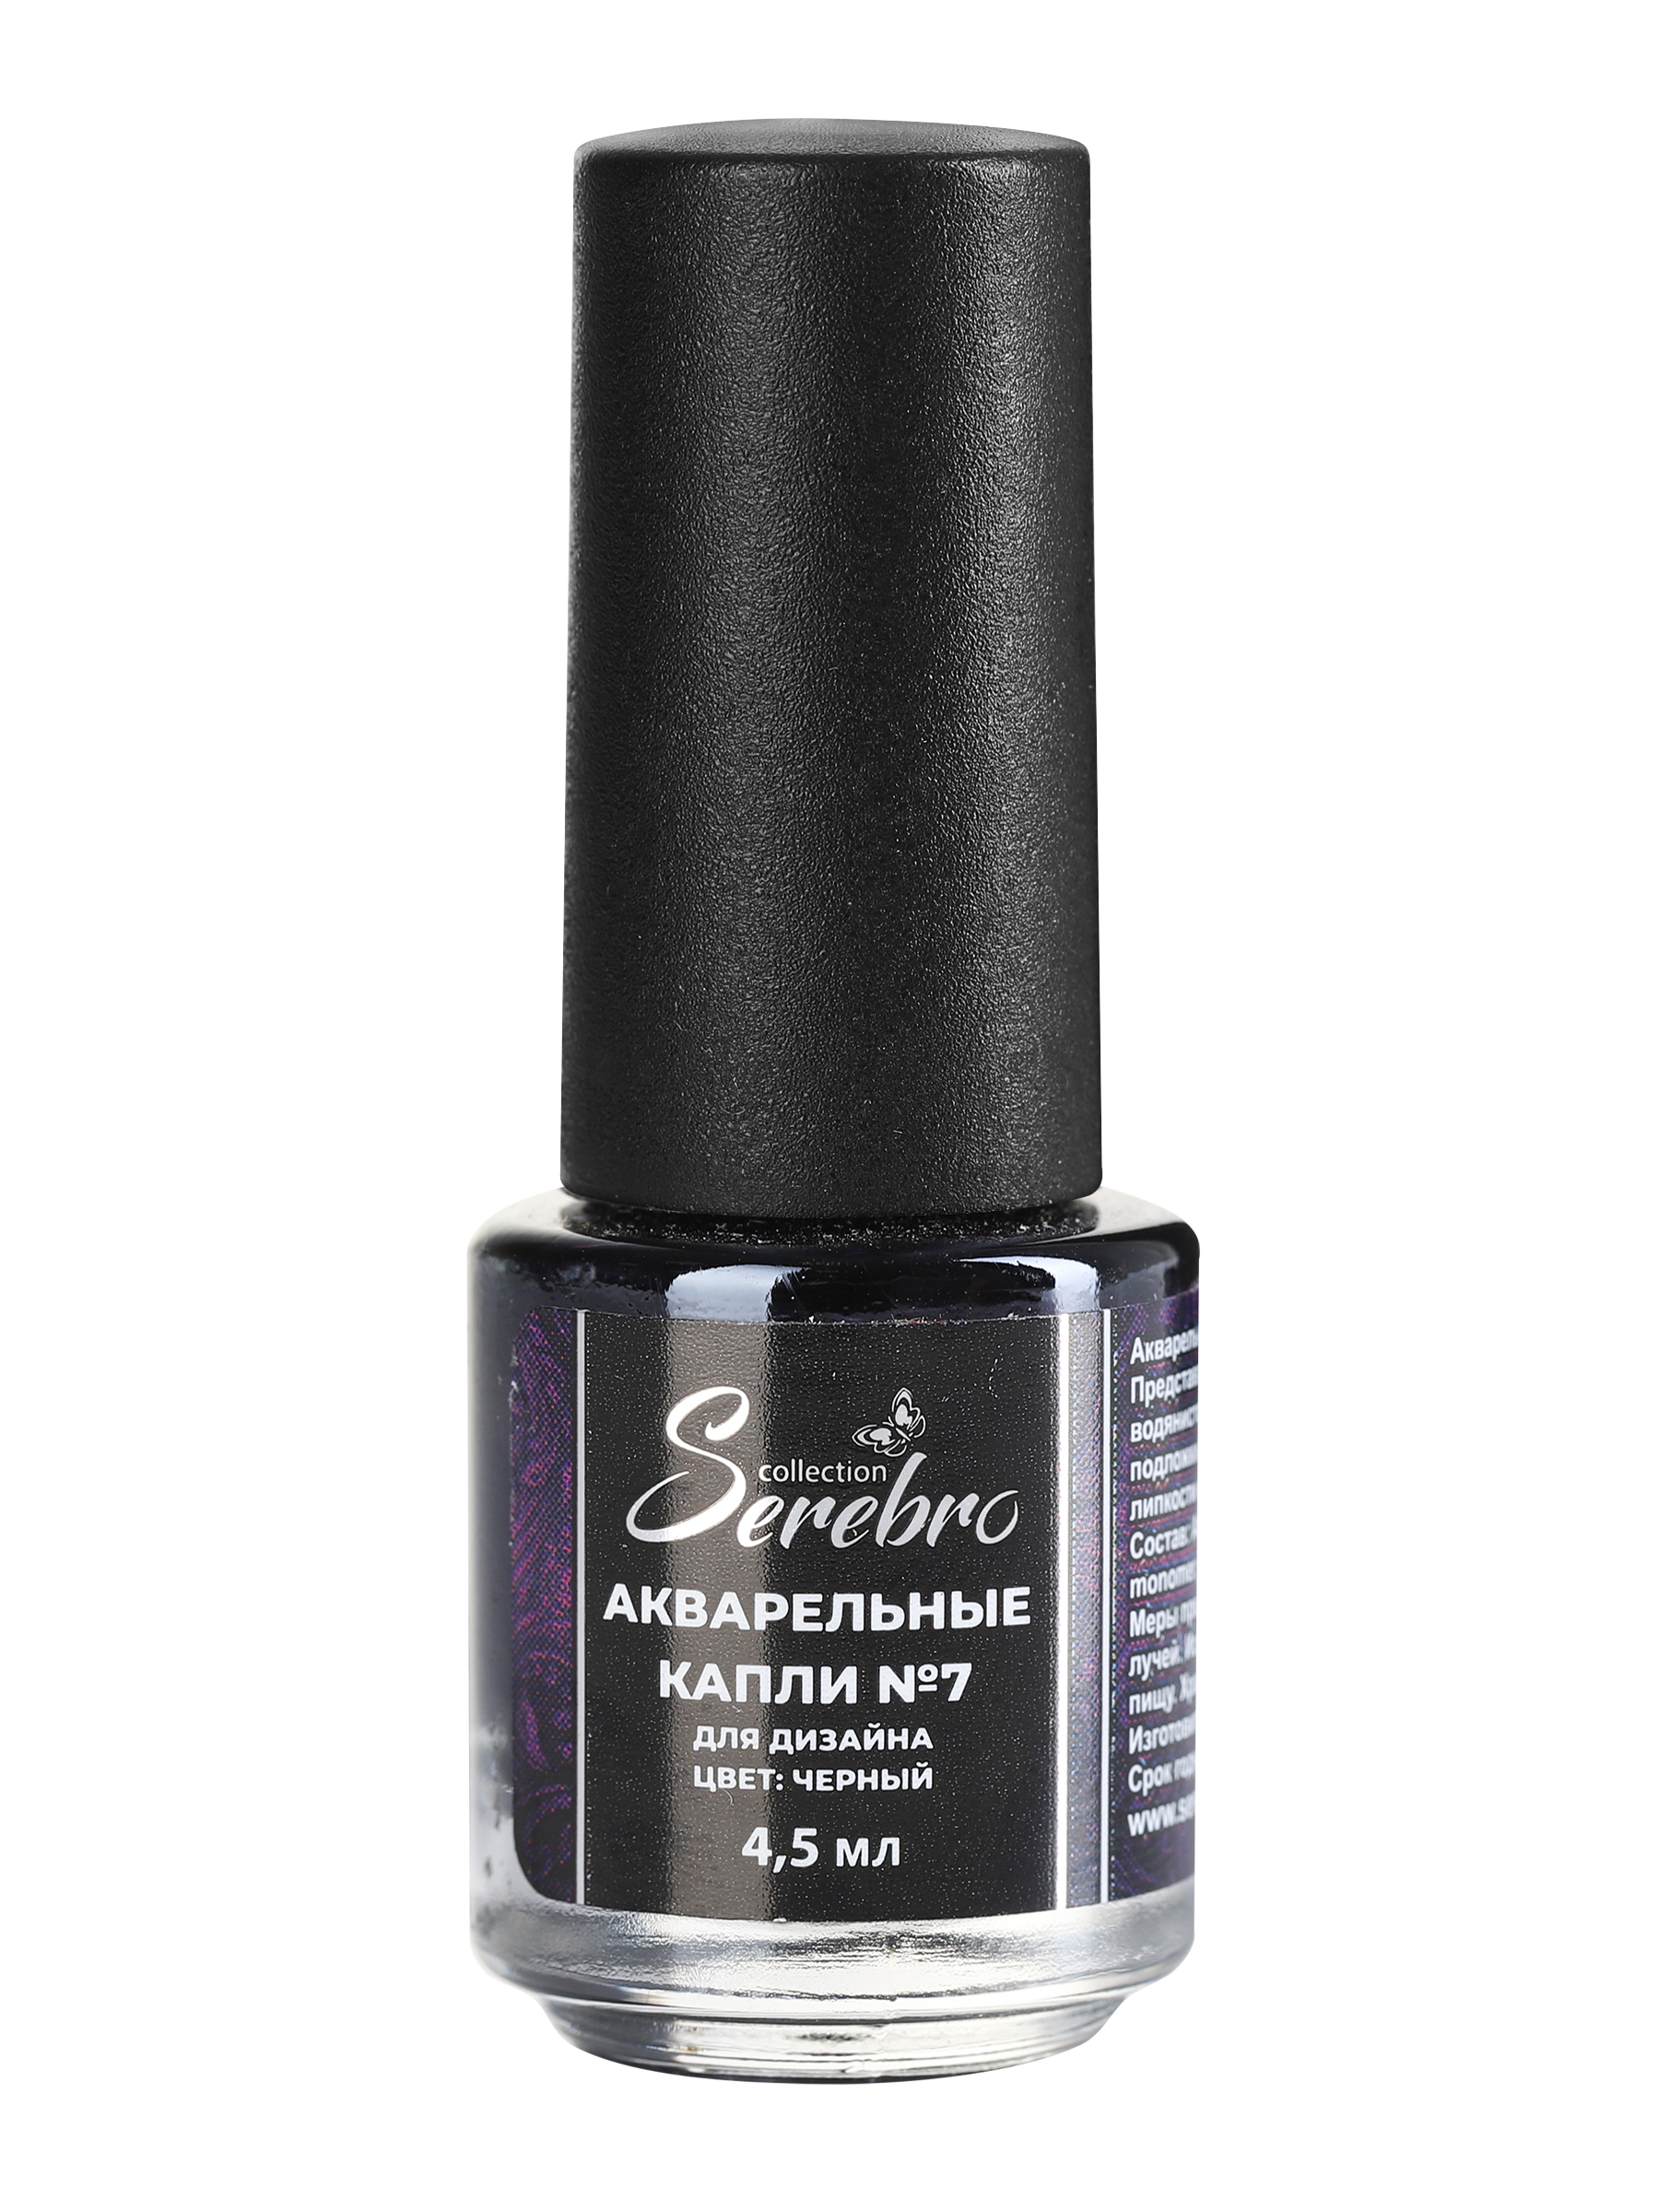 Акварель для дизайна ногтей Serebro, цветная краска для декора маникюра, черная, 4,5 мл пермогорская роспись раскраска